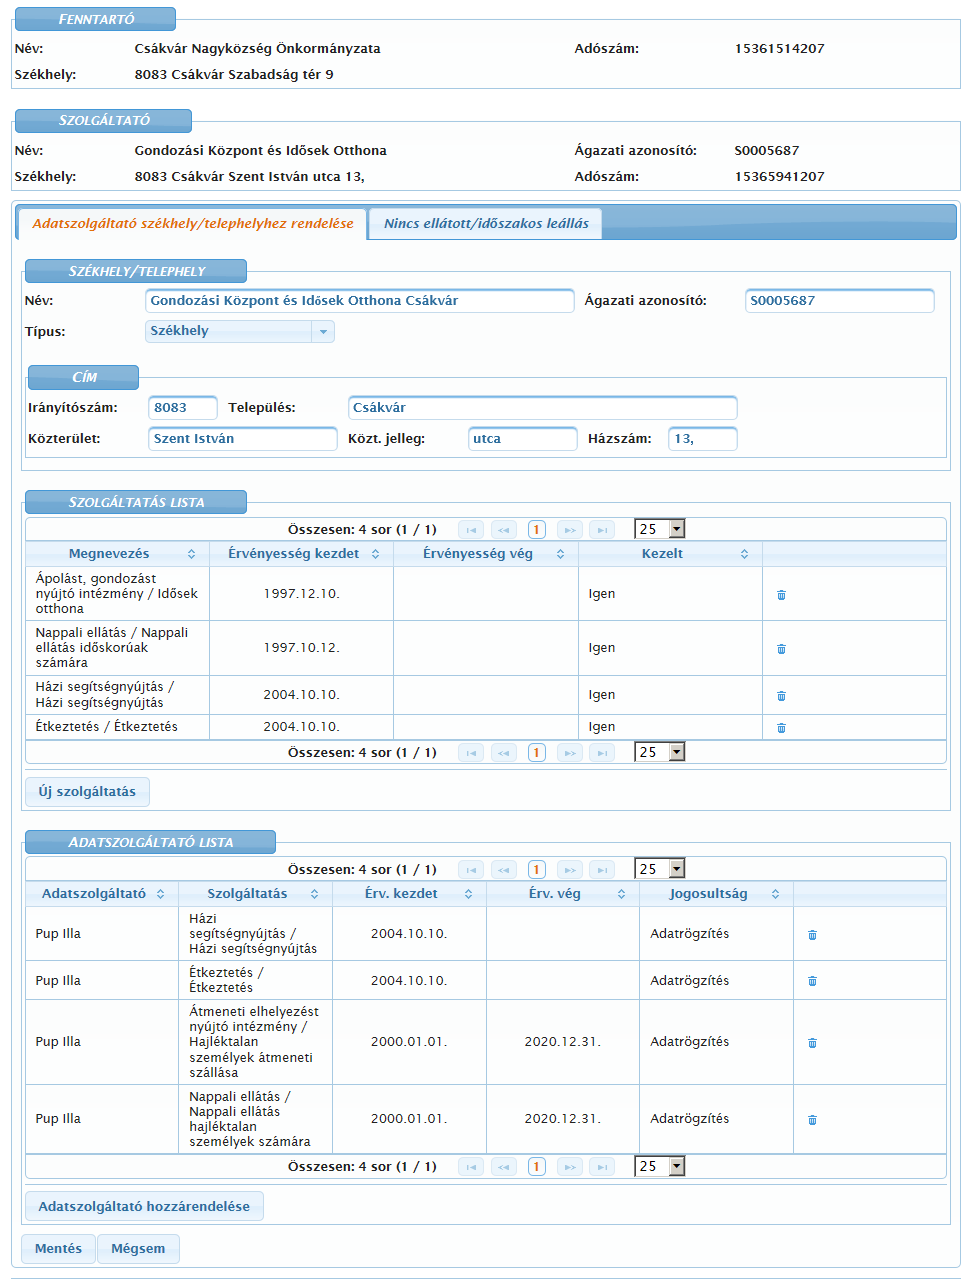 A következő képernyőn a kiválasztott telephely részletes adatait láthatjuk: az (6) Adatszolgáltató székhely/telephelyhez rendelése